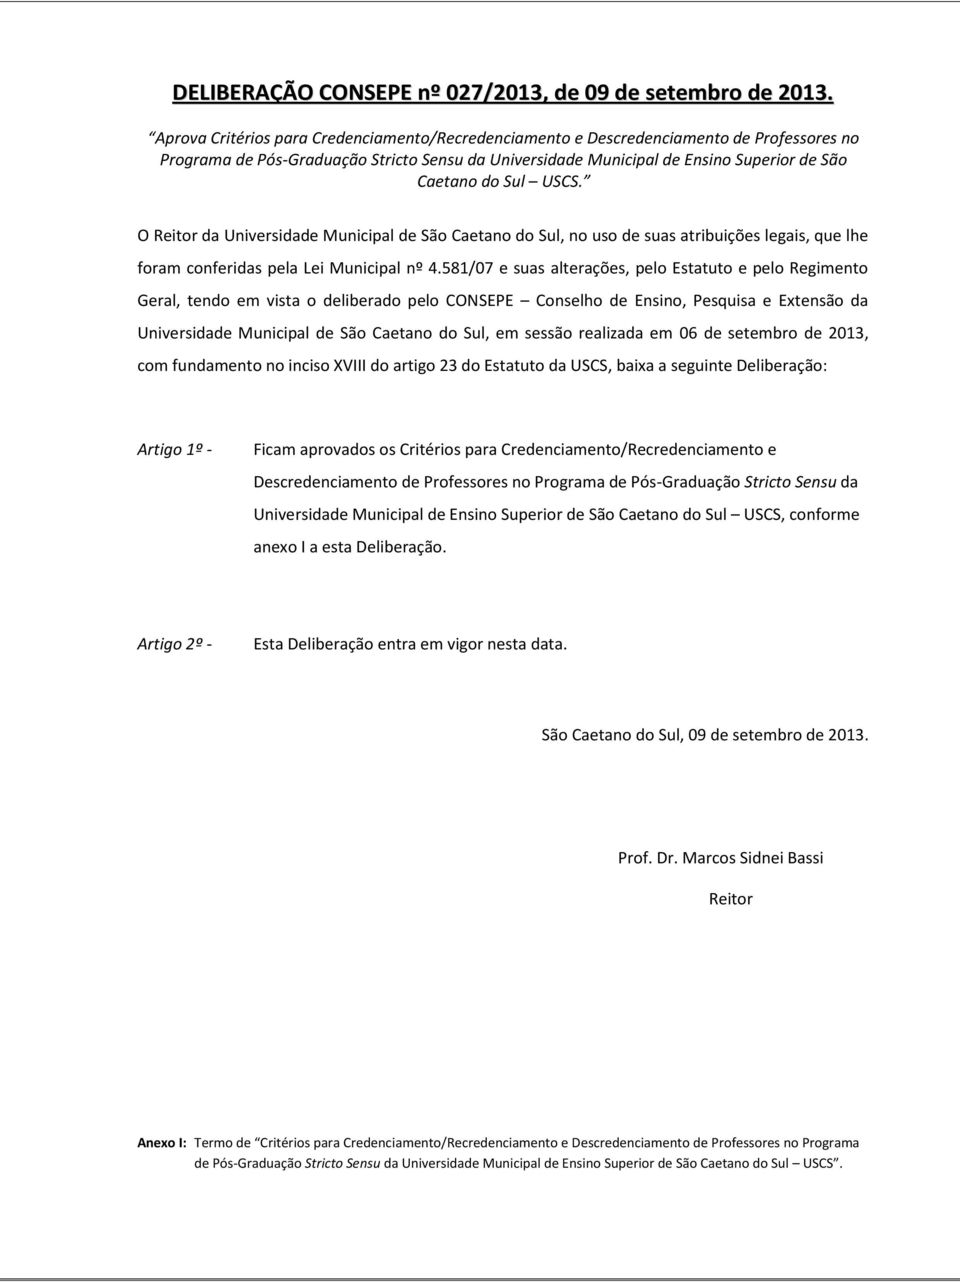 USCS. O Reitor da Universidade Municipal de São Caetano do Sul, no uso de suas atribuições legais, que lhe foram conferidas pela Lei Municipal nº 4.